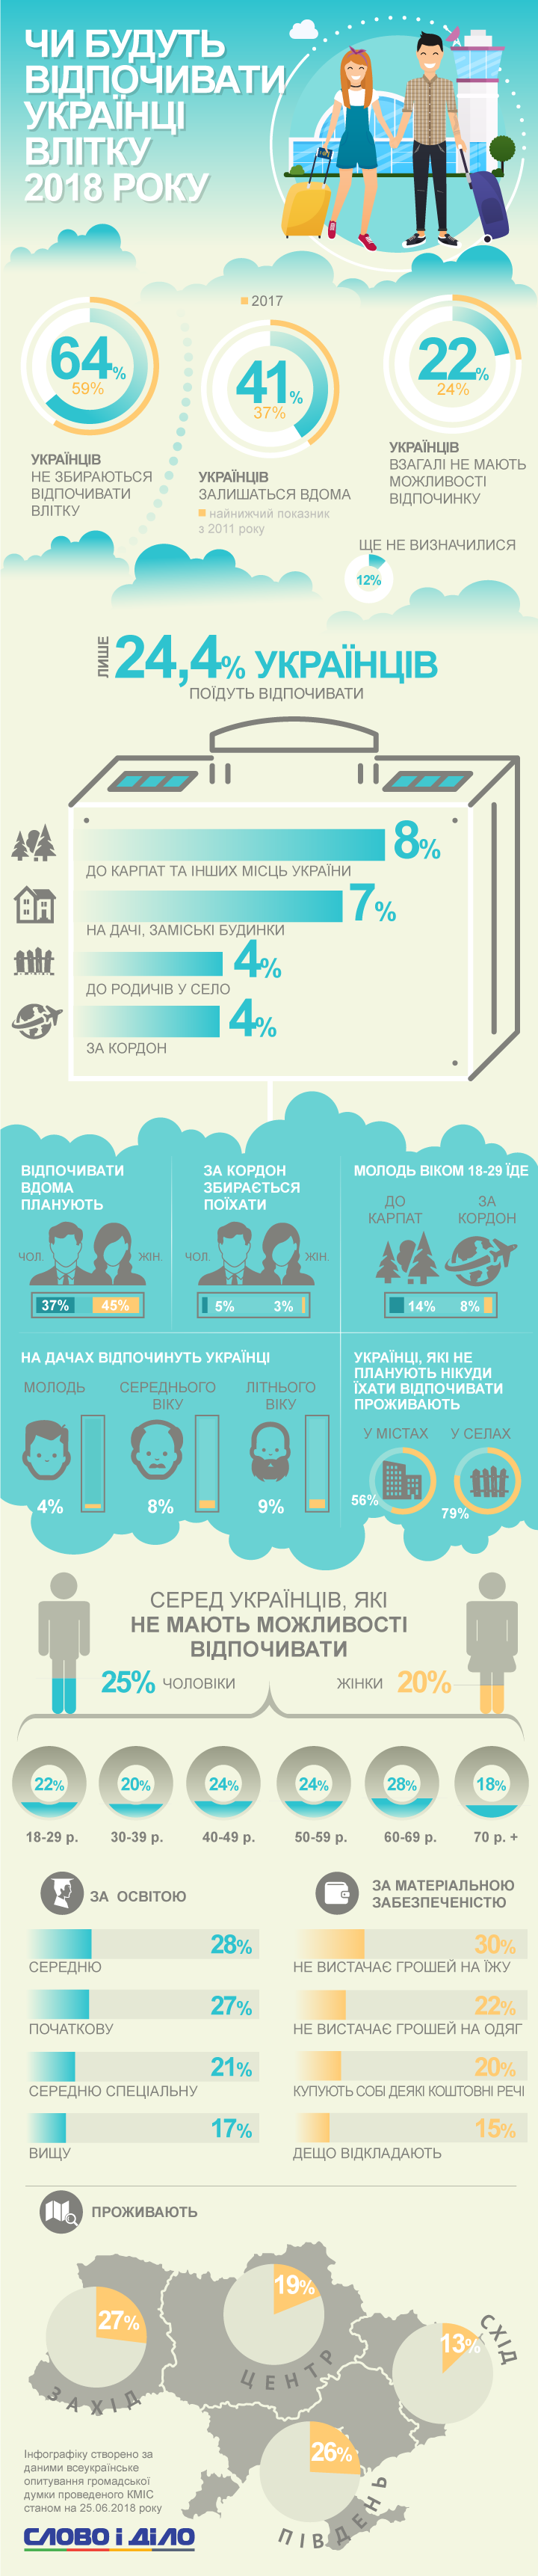 Відпочити десь збираються лише 24,4 відсотка українців. Більшість проведе відпустку, не виїжджаючи з країни. Трохи більш ніж 4 відсотки поїдуть за кордон.